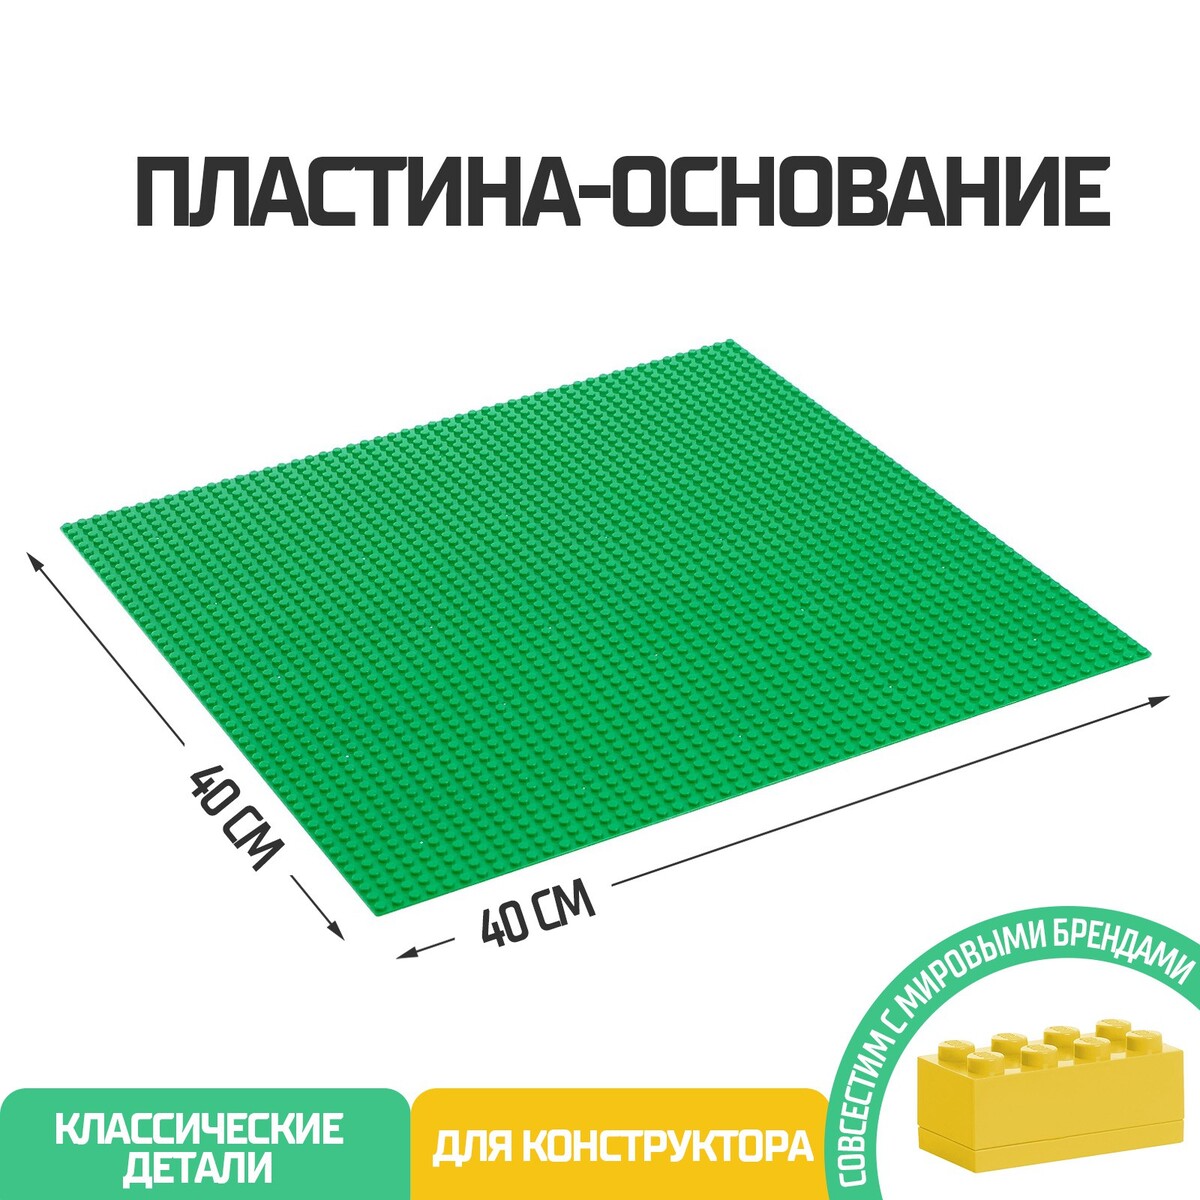 Пластина-основание для конструктора, 40 х 40 см, цвет зеленый пластина основание для конструктора 40 х 40 см зеленый